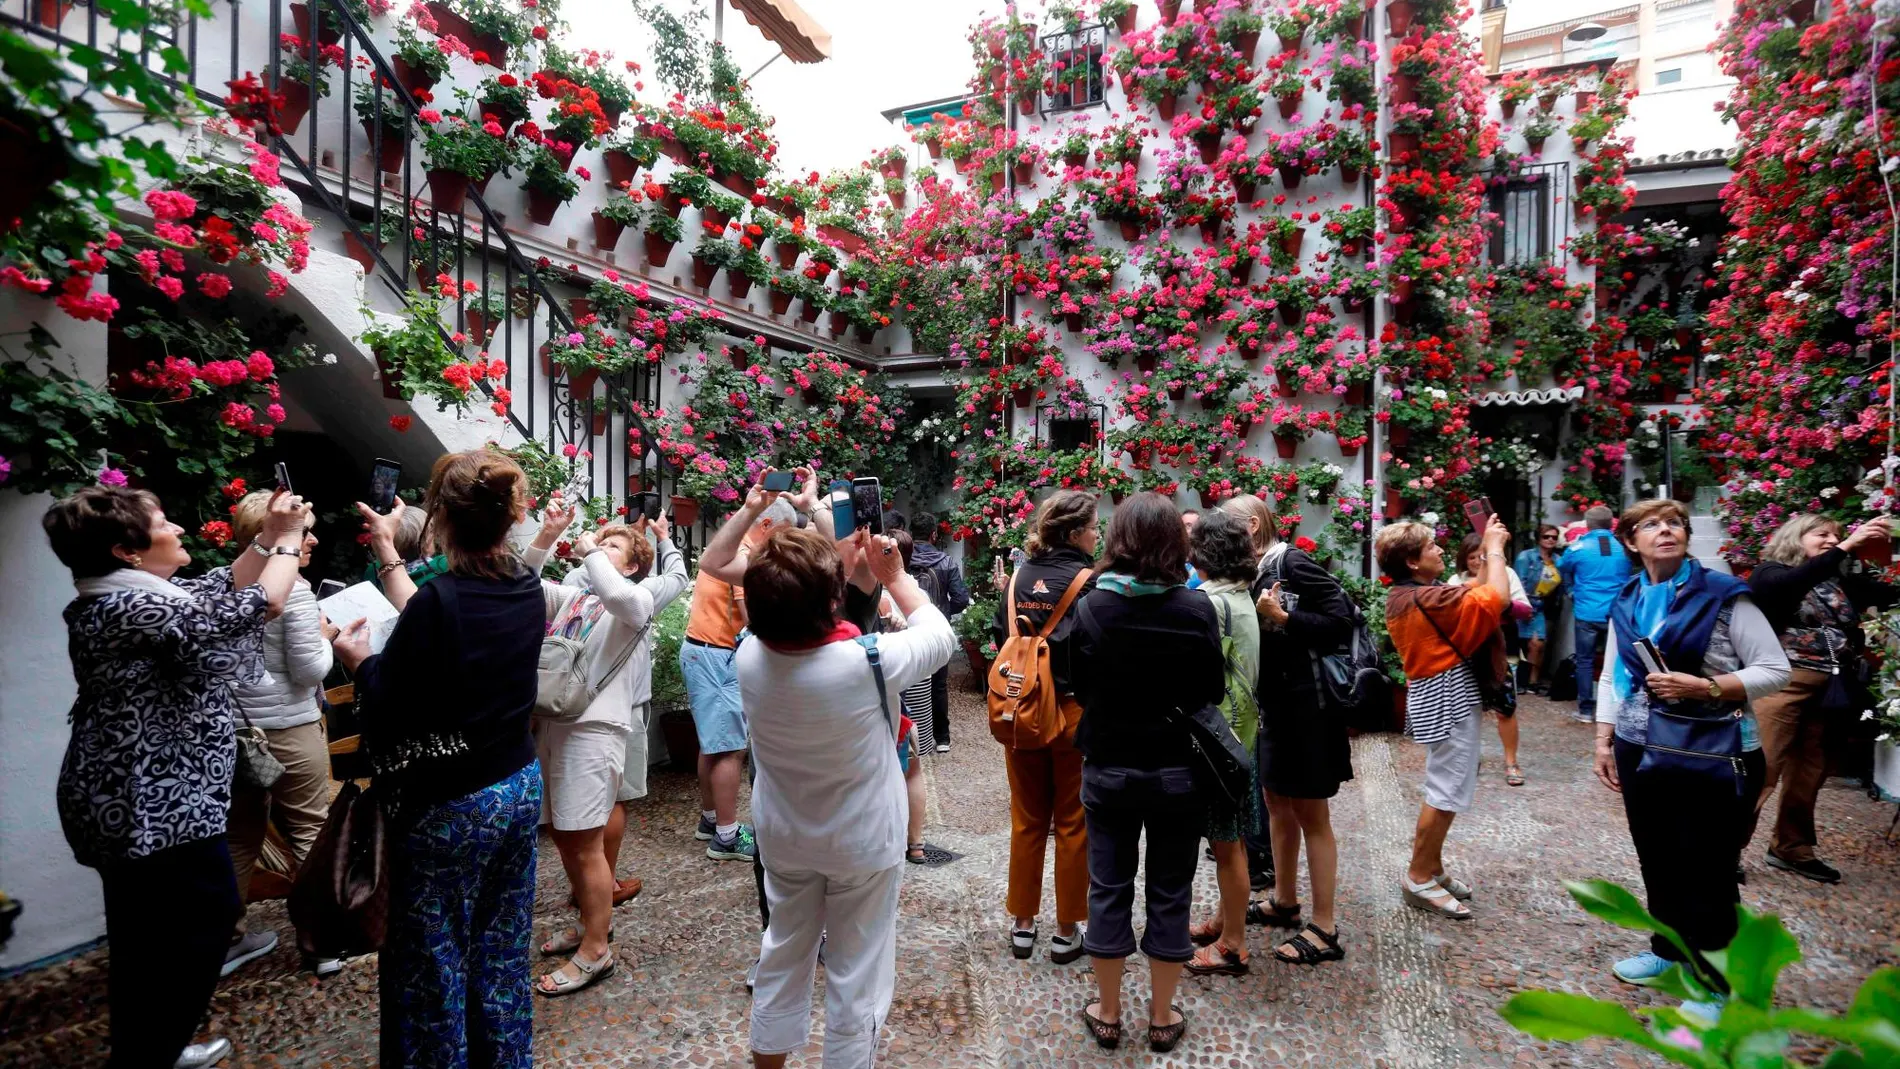 Los patios de Córdoba son uno de los destinos más populares entre los turistas